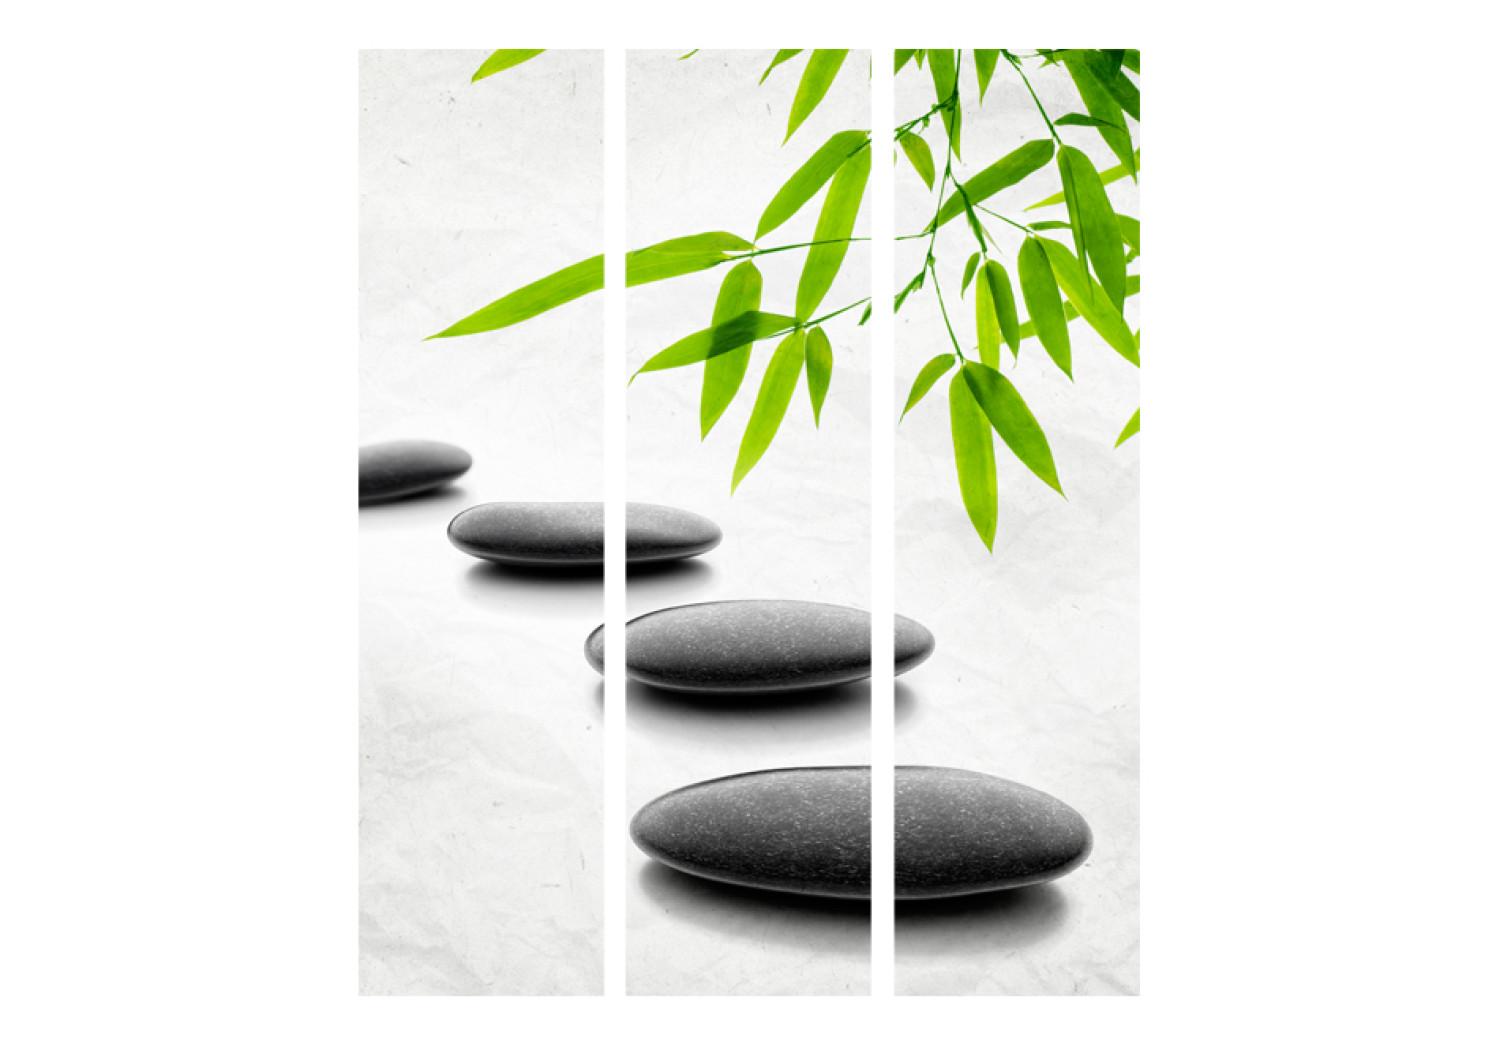 Biombo barato Zen Stones [Room Dividers]